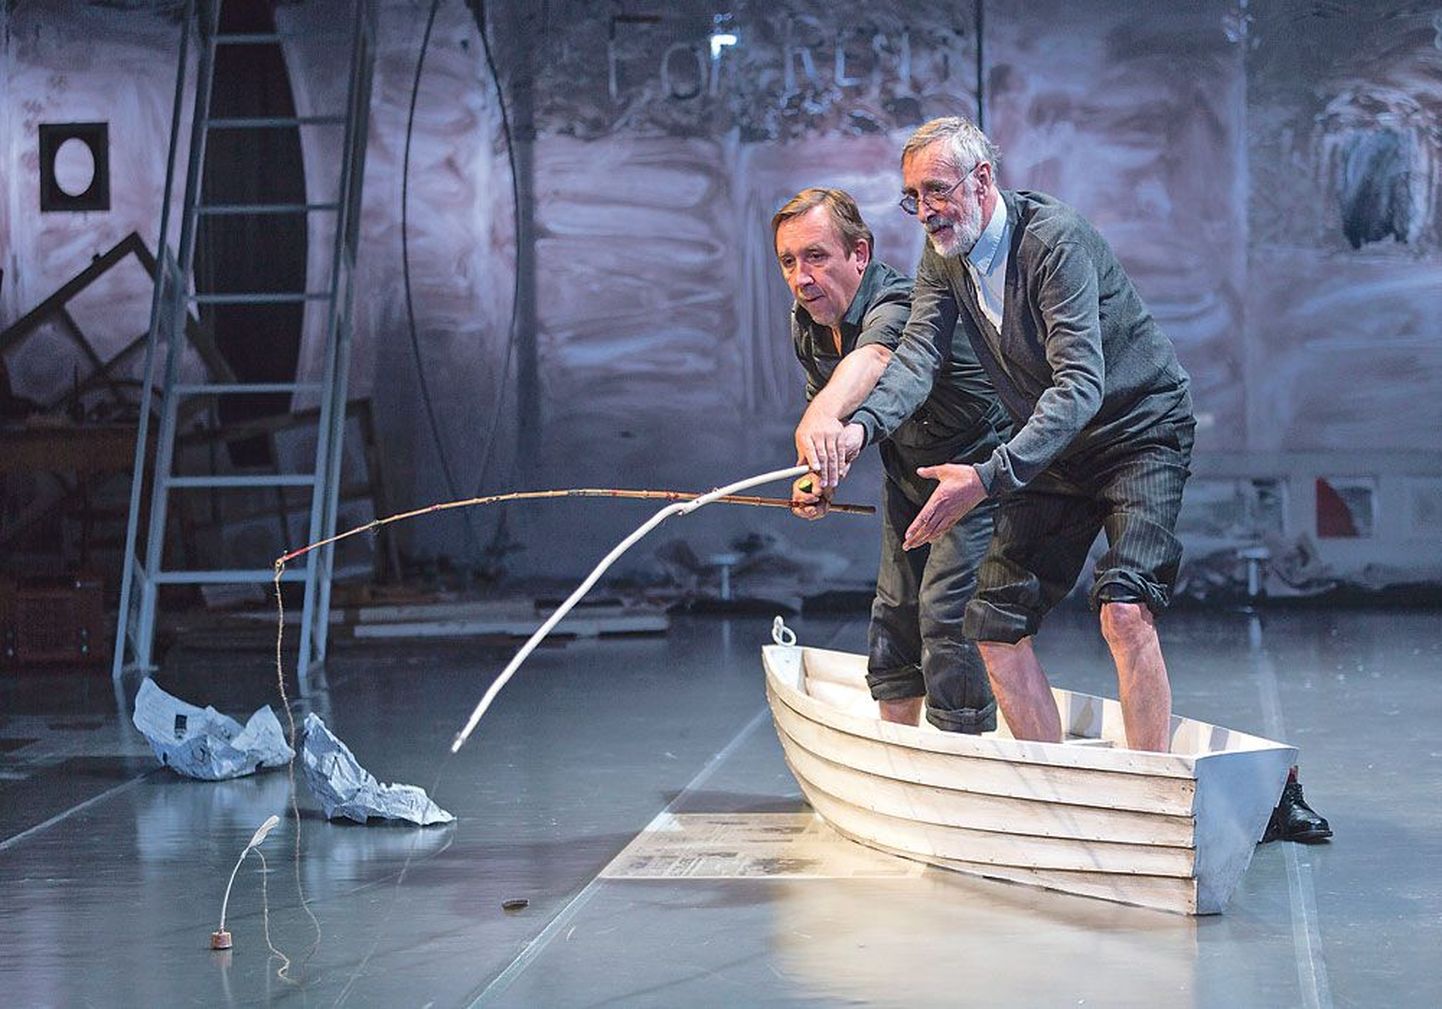 Момент счастья: Возвратившийся (Лембит Ульфсак) и Отец (Эльмо Нюганен) удят рыбу.